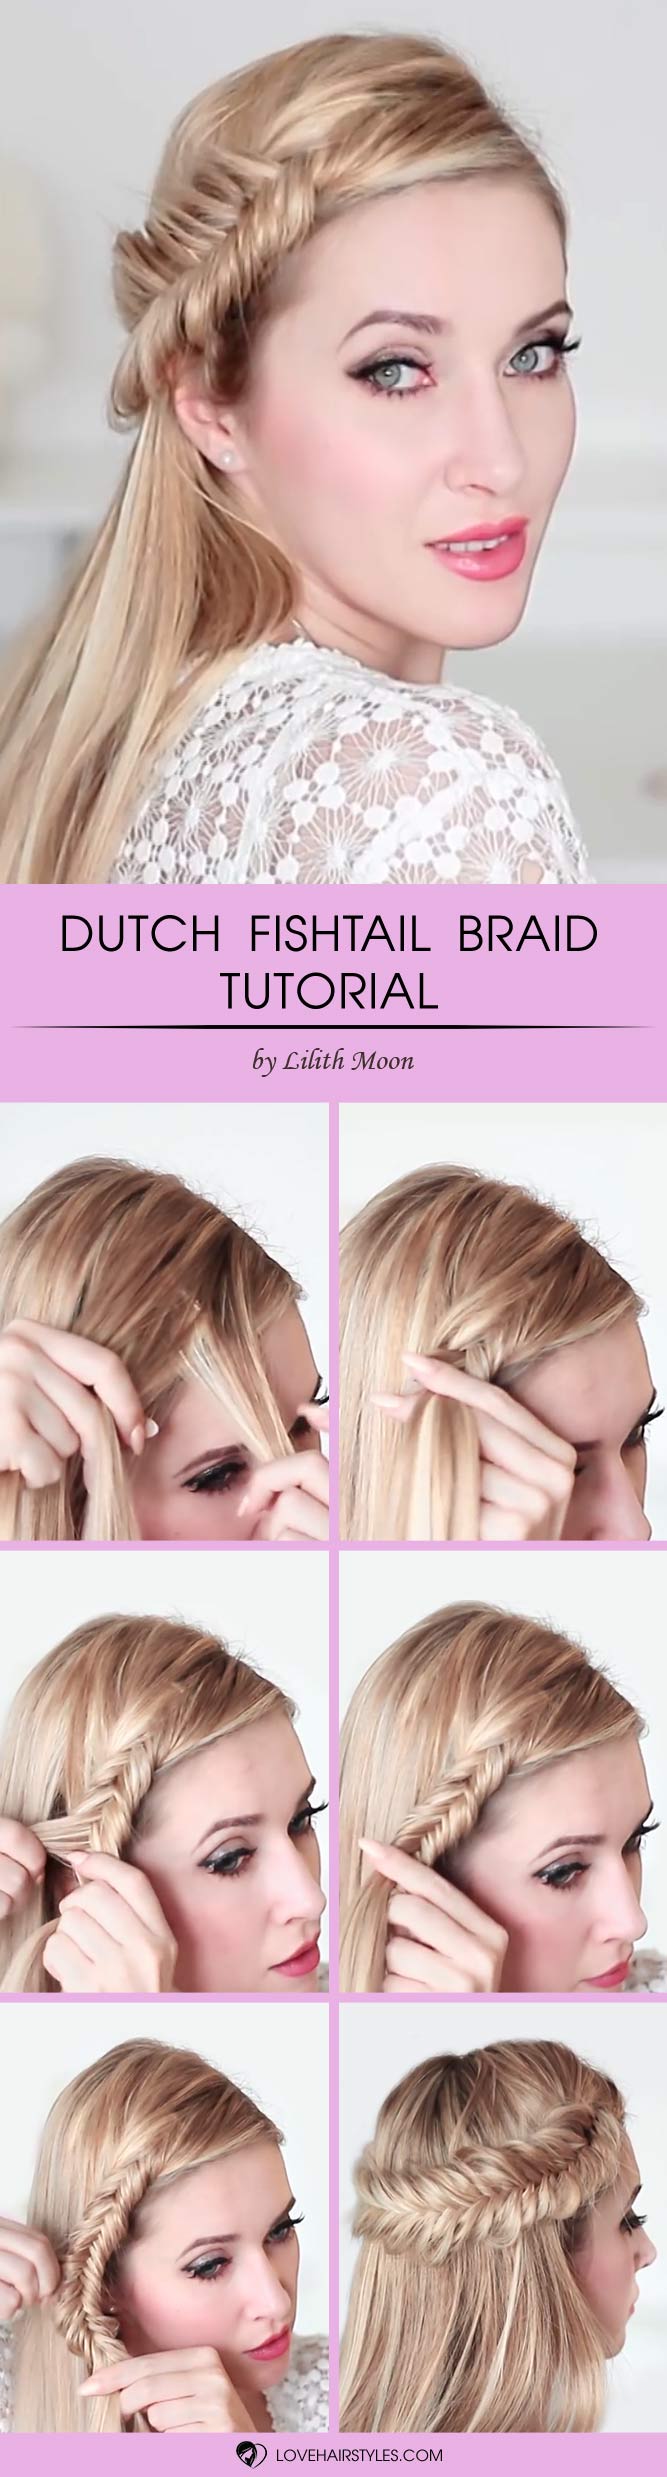 Dutch Fishtail Braid #howtofishtailbraid #fishtailbraid #braids #hairstyles #tutorials